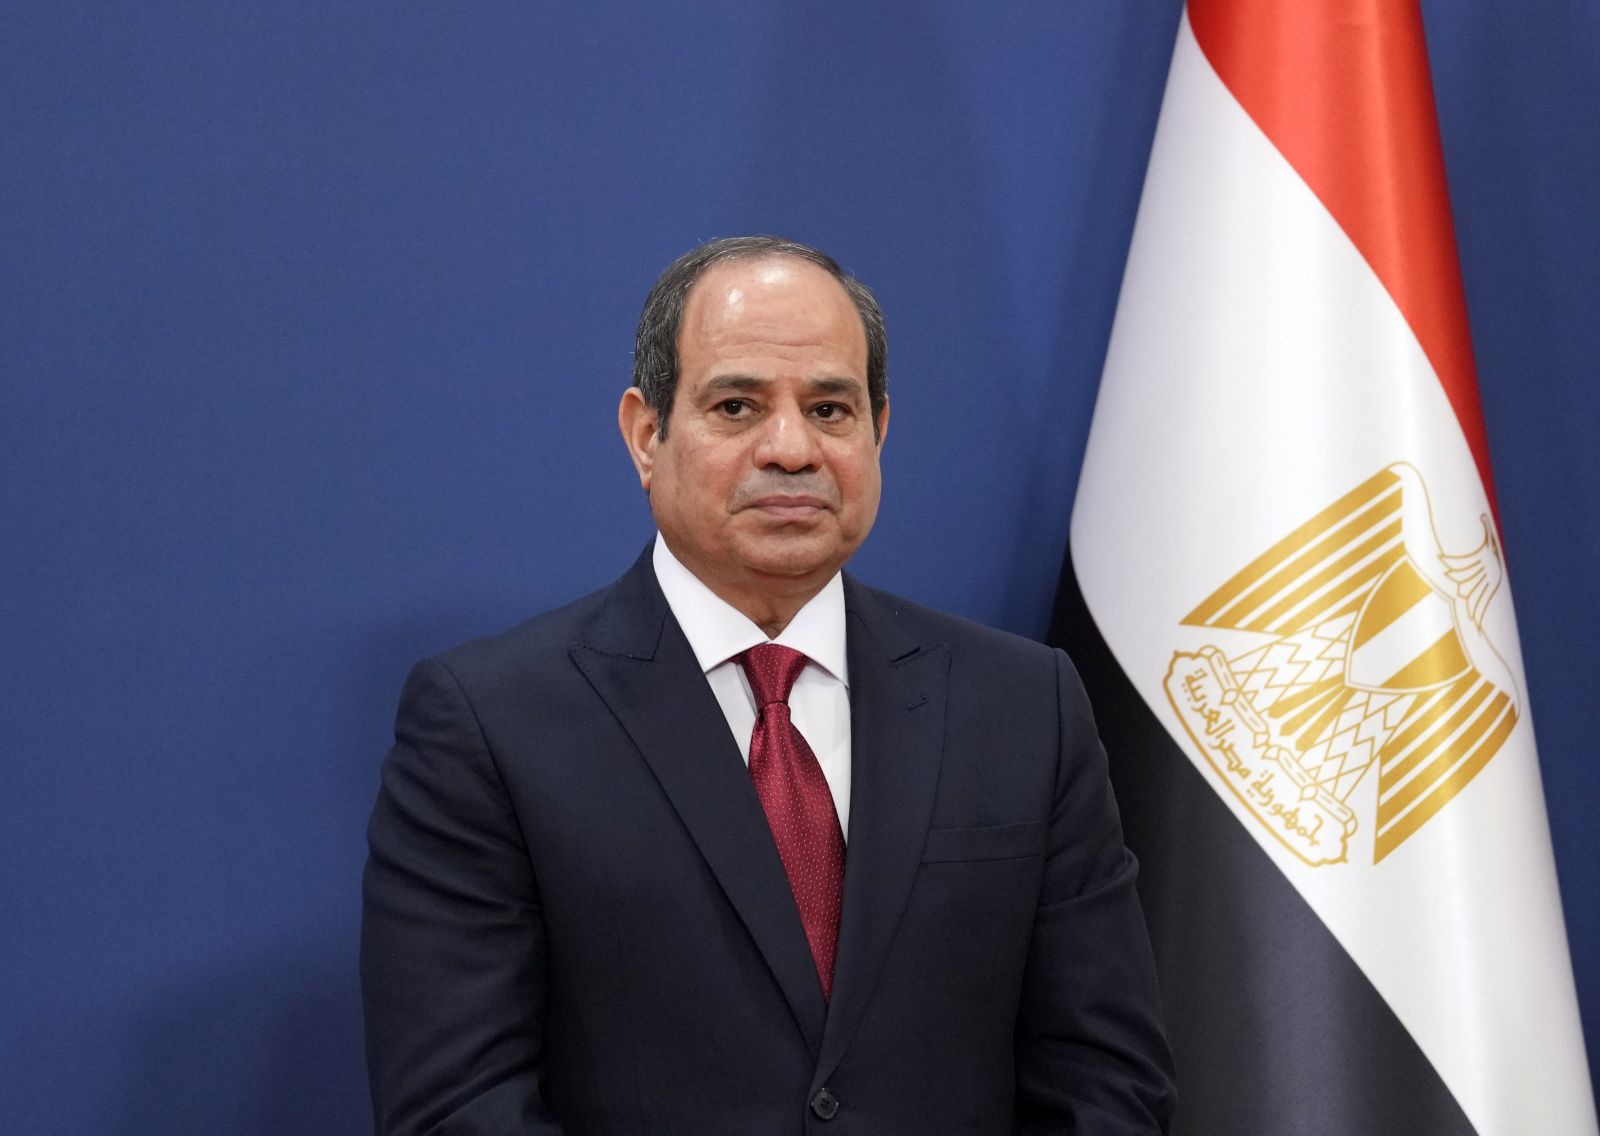 Sisi yenidən Misir prezidenti seçildi